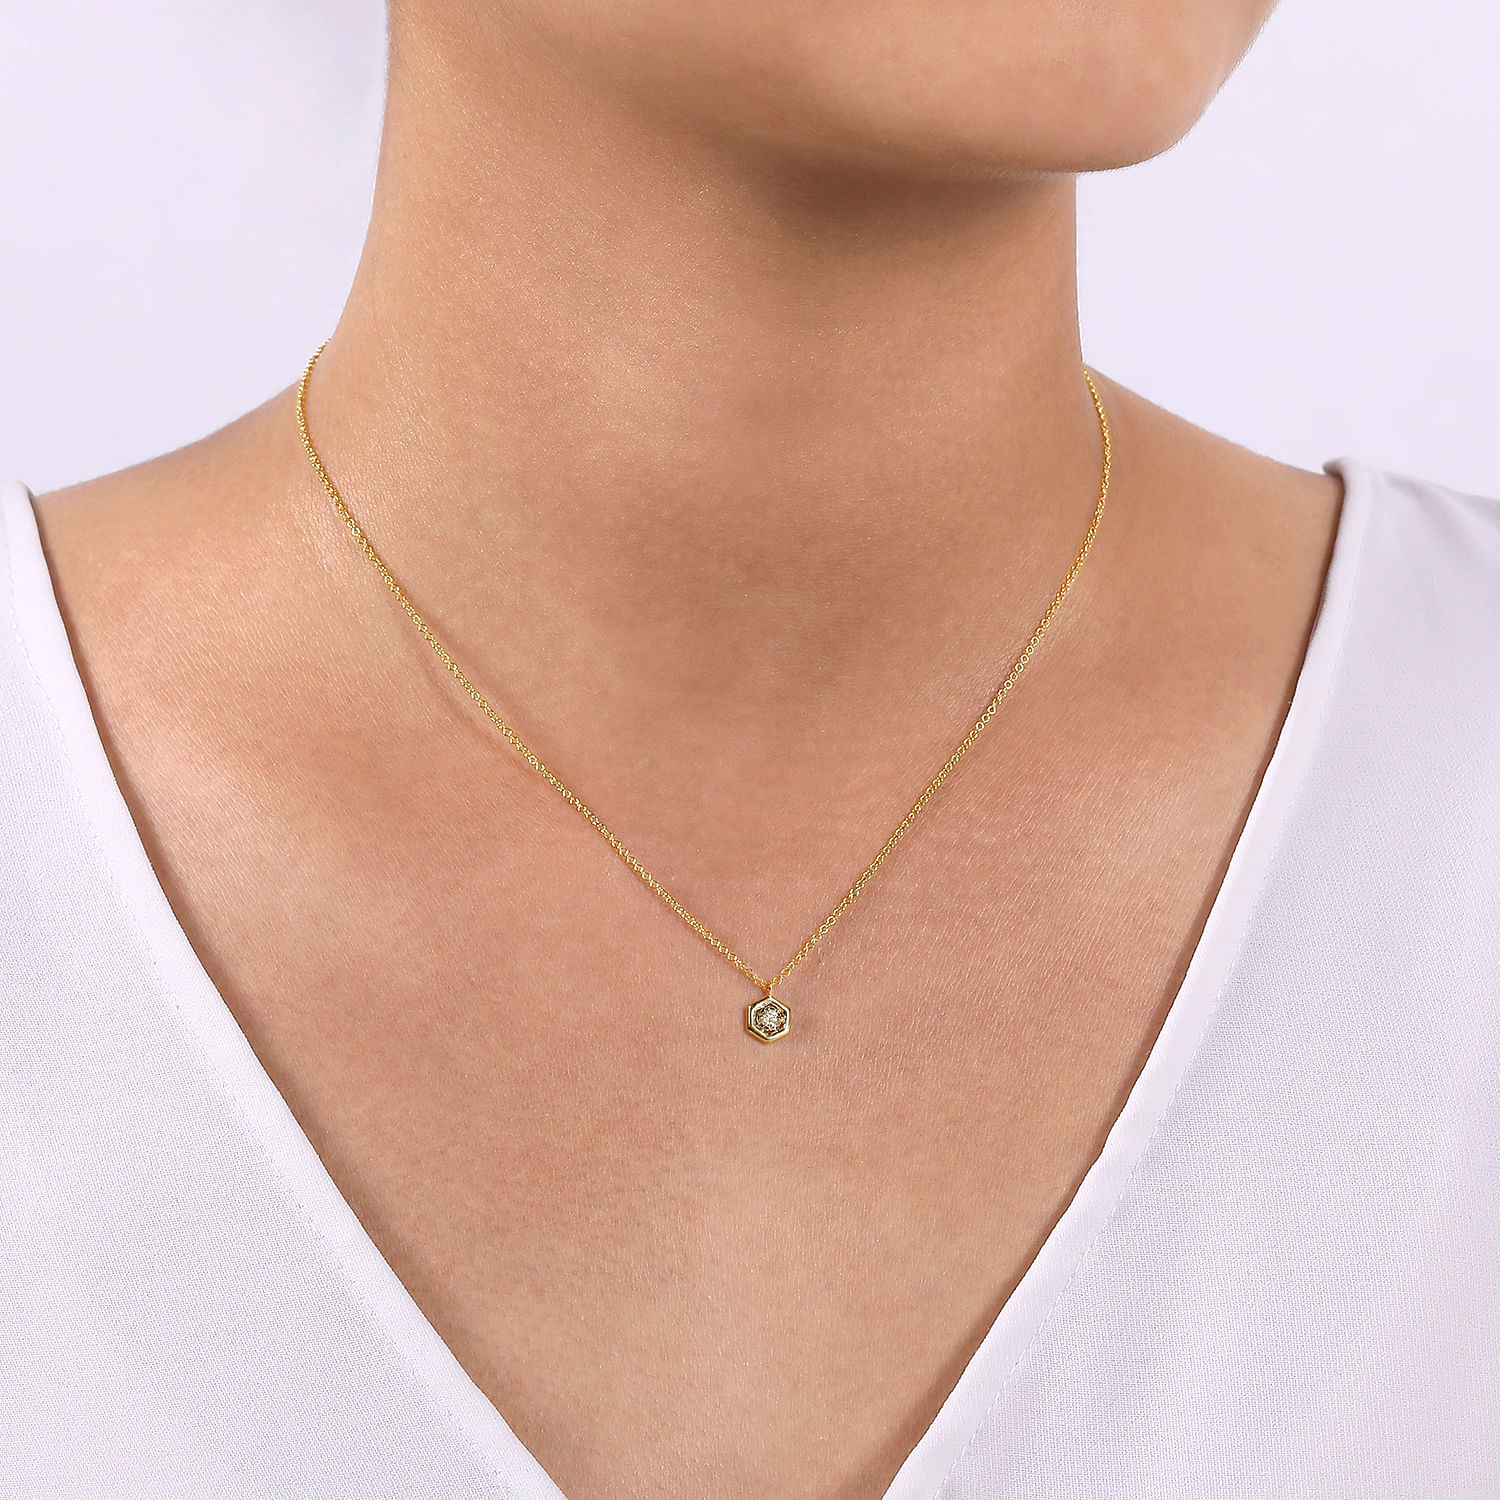 14K Yellow-White Gold Round Diamond Pendant Necklace with Hexagonal Frame